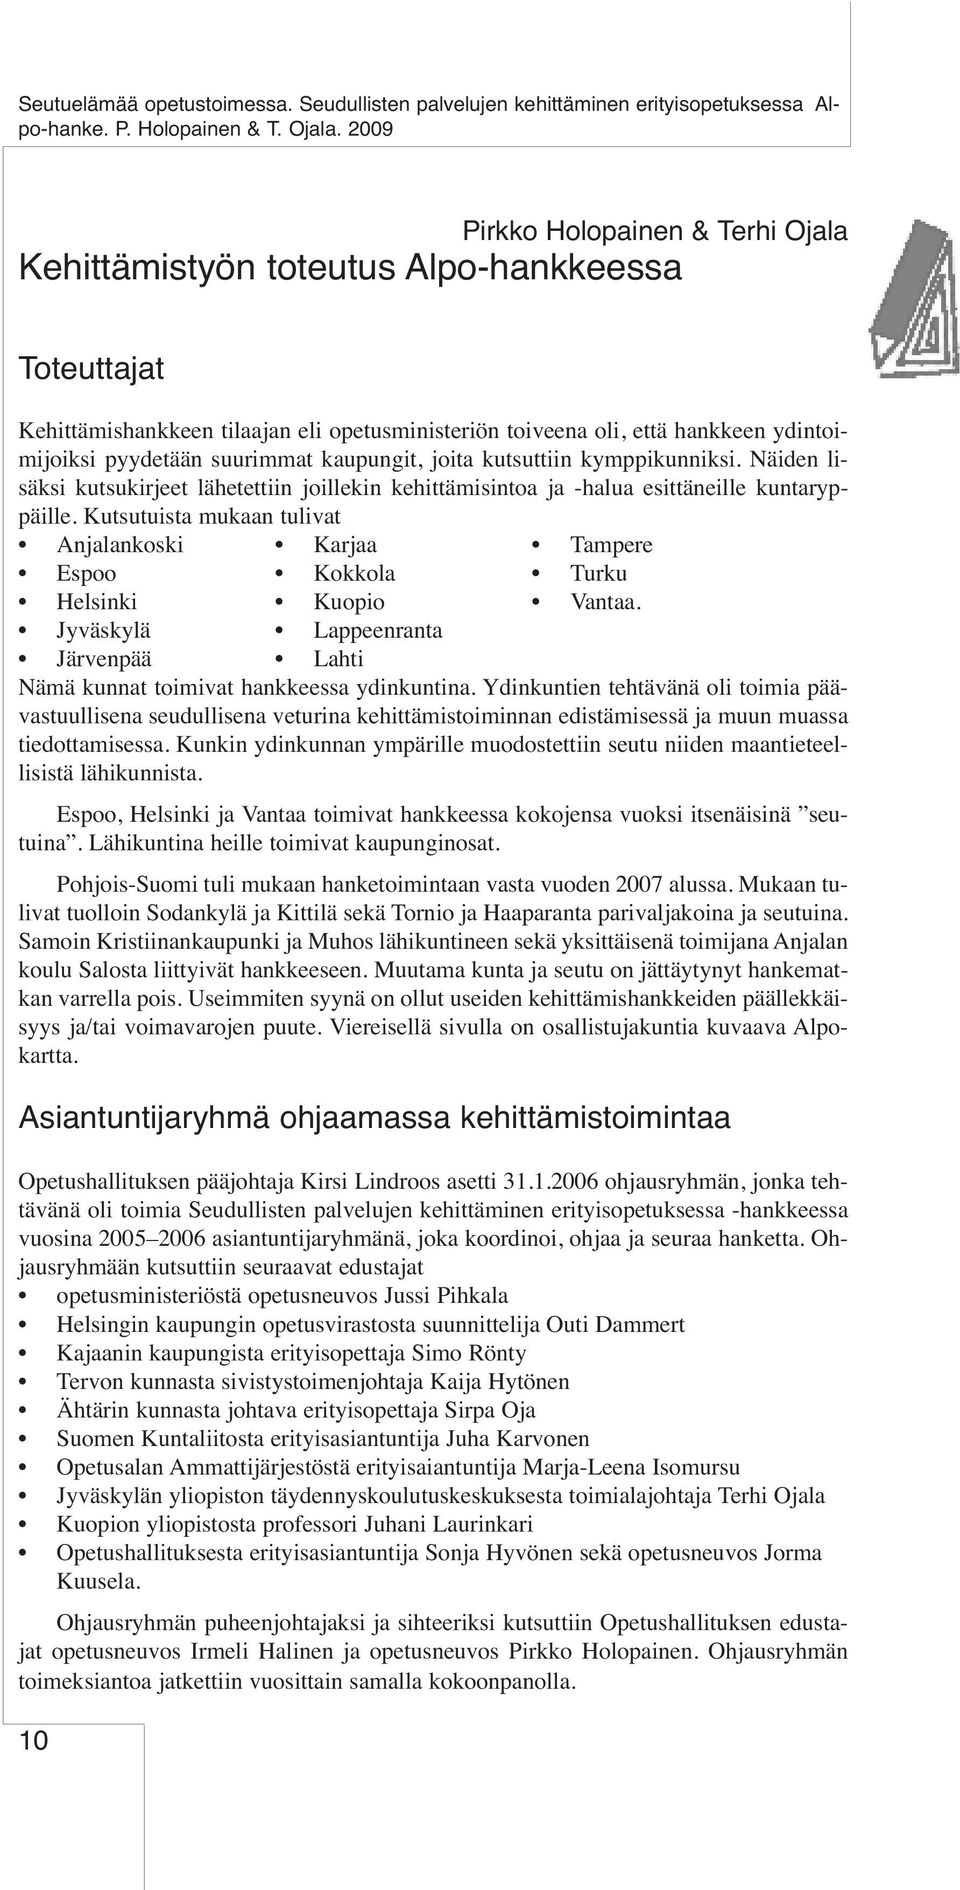 Kutsutuista mukaan tulivat Anjalankoski Karjaa Tampere Espoo Kokkola Turku Helsinki Kuopio Vantaa. Jyväskylä Lappeenranta Järvenpää Lahti Nämä kunnat toimivat hankkeessa ydinkuntina.